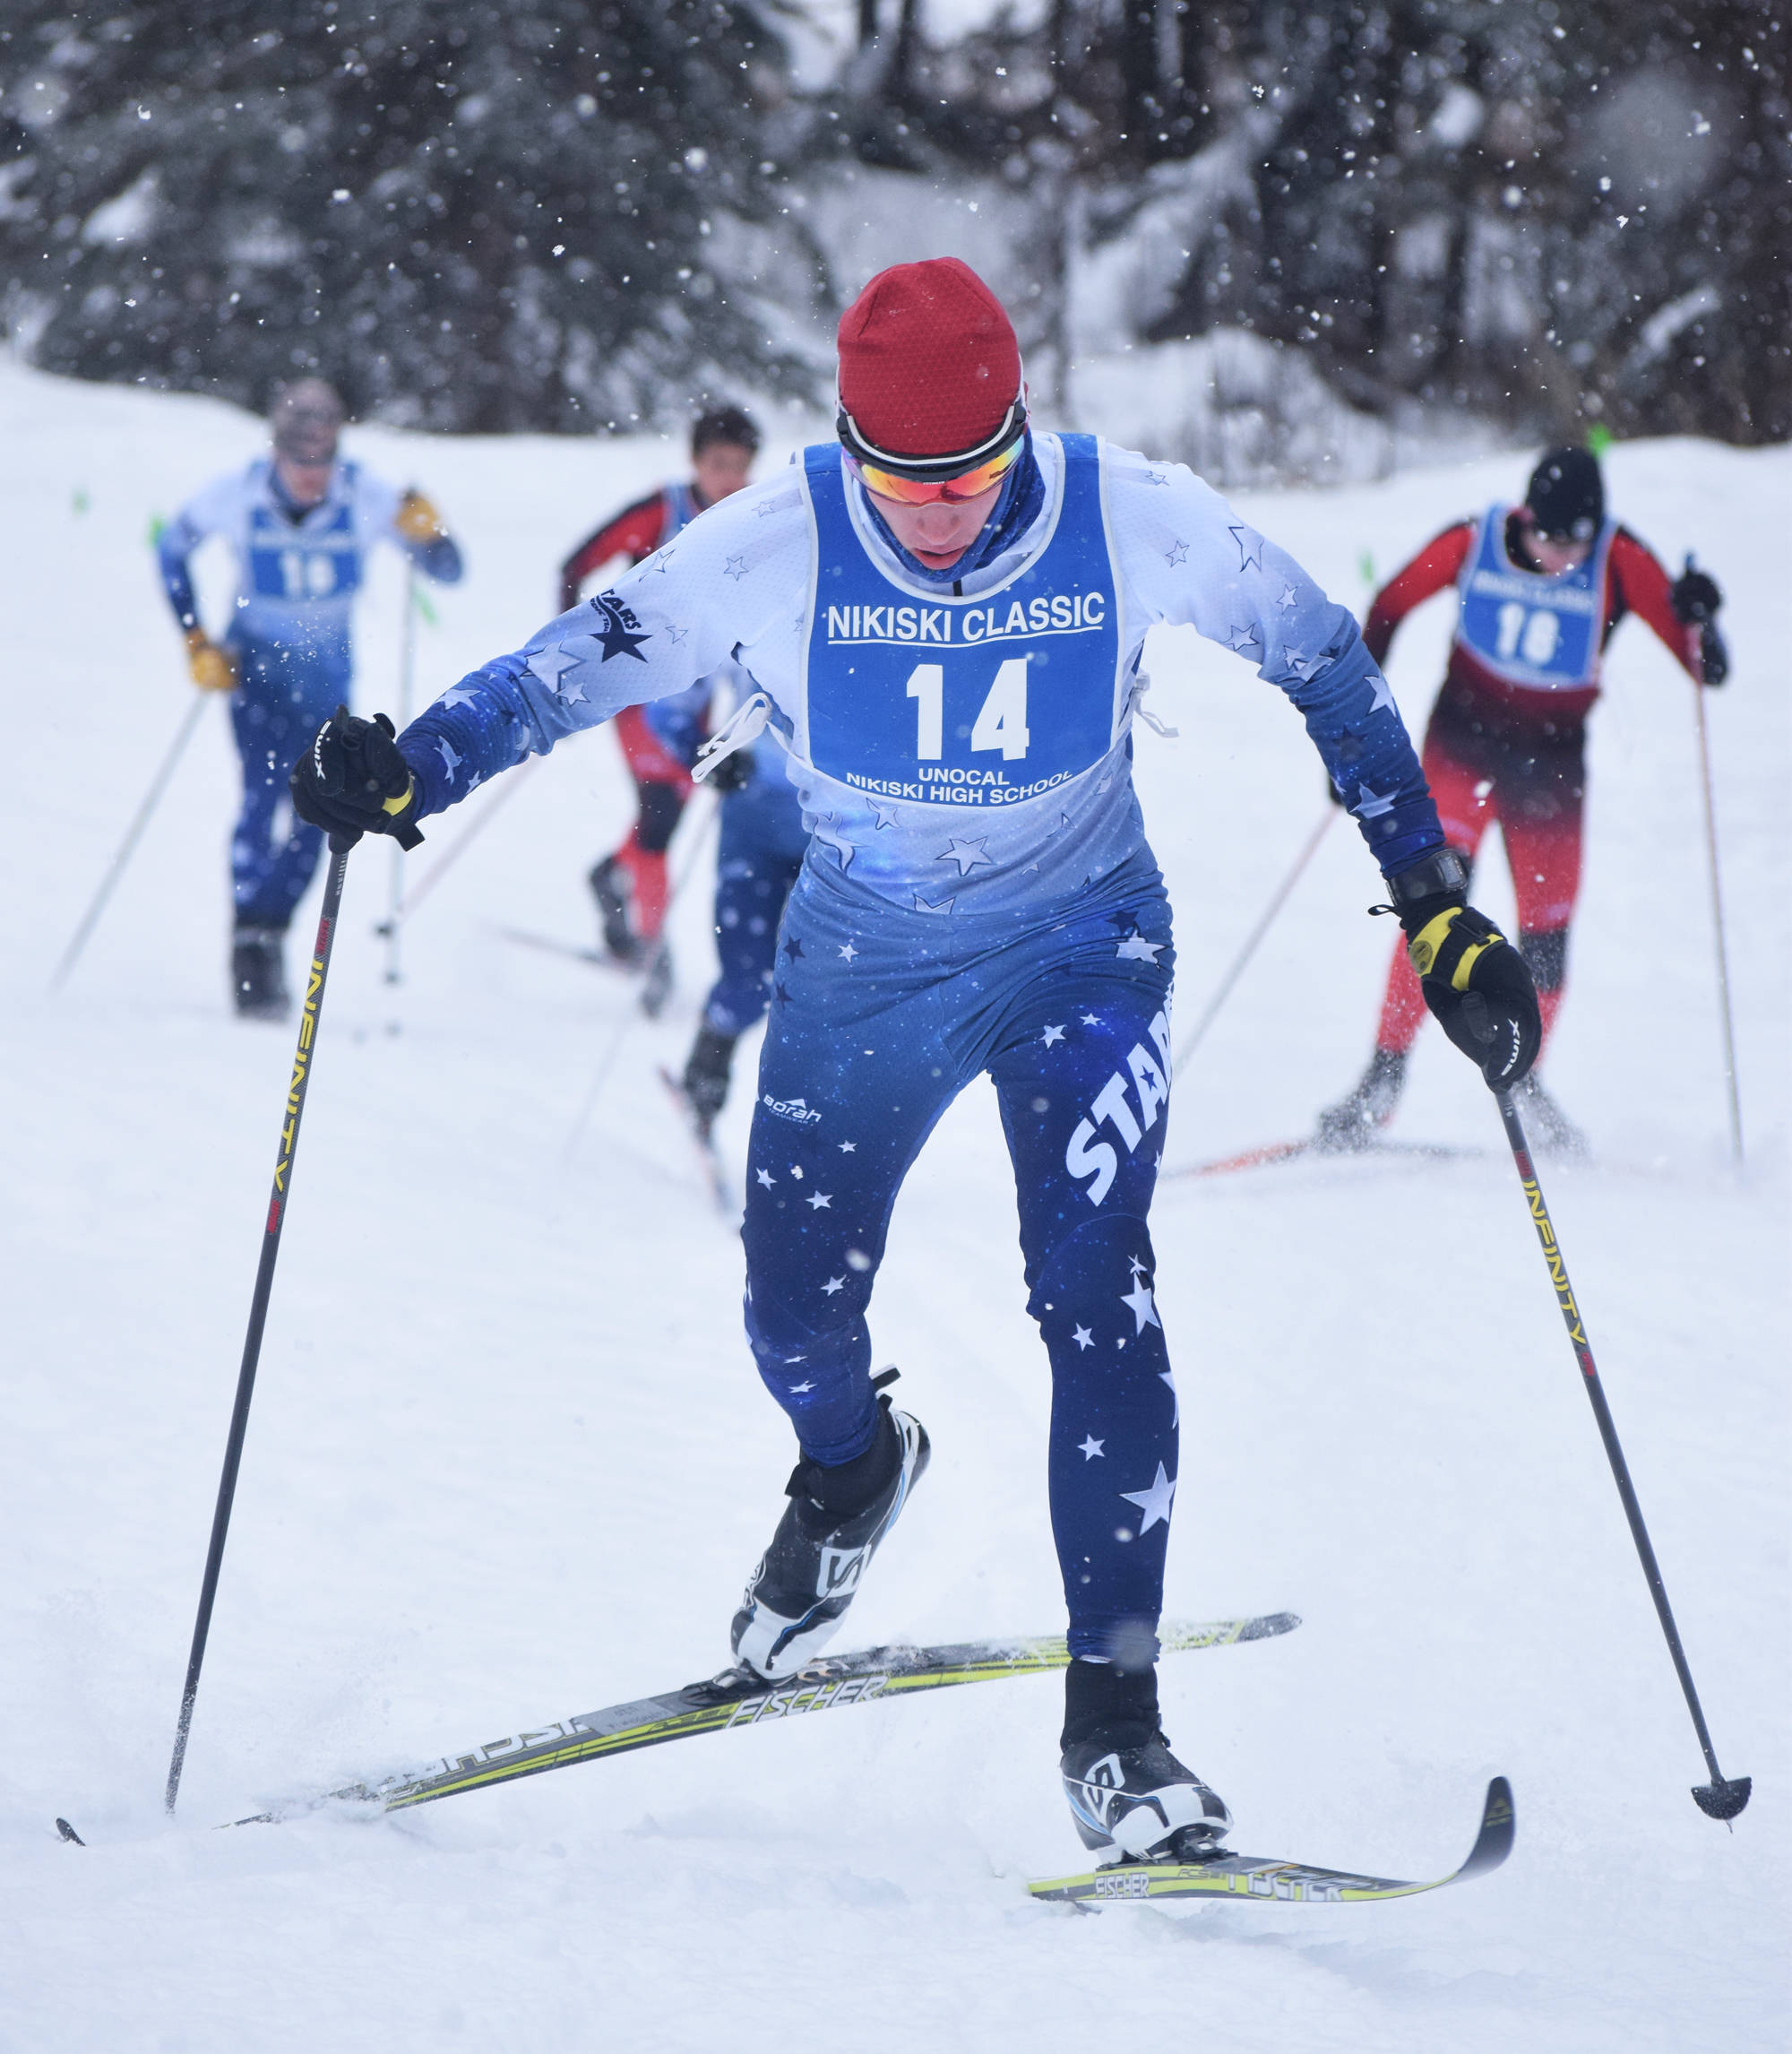 Peninsula ski teams eyeing goals at state meet